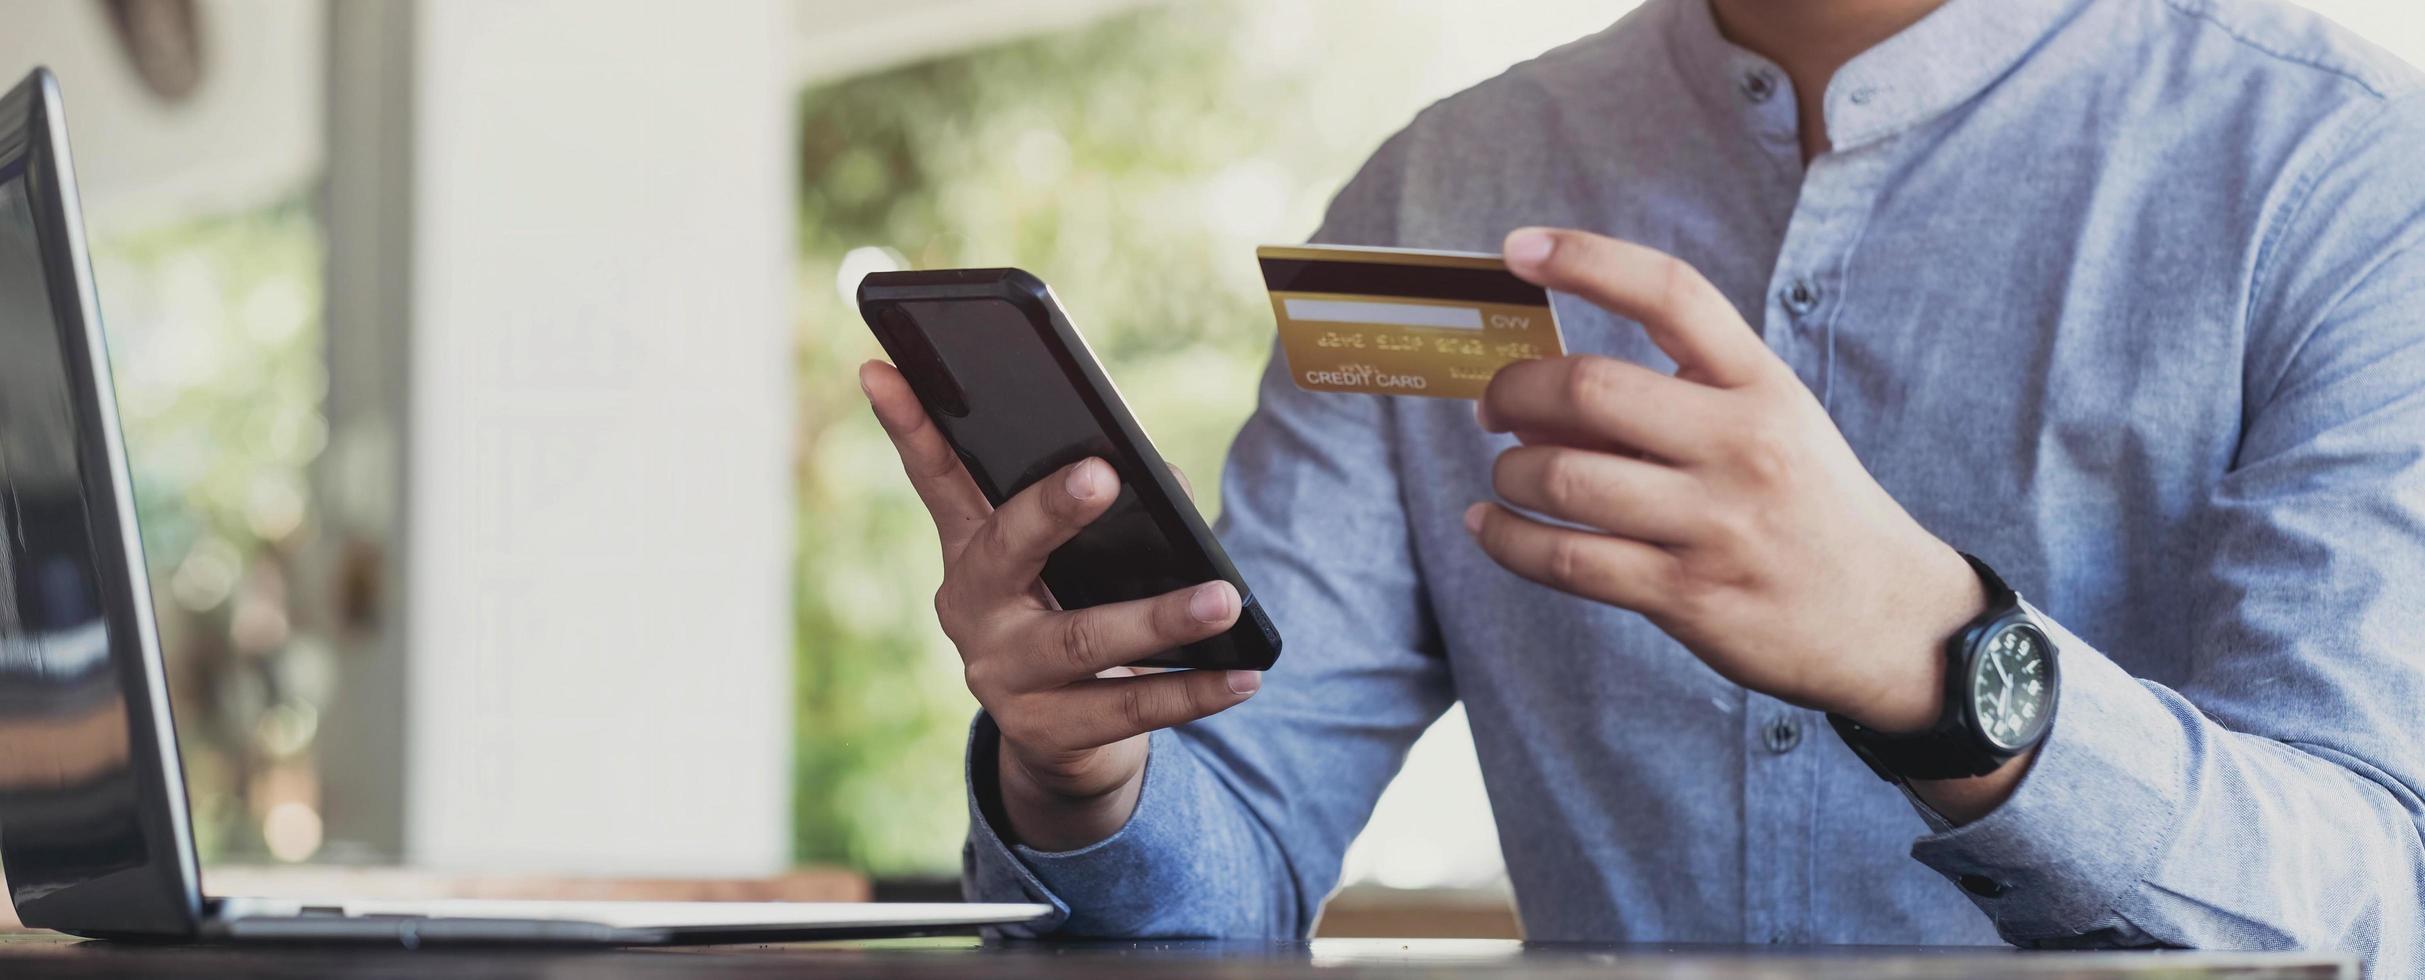 paiement en ligne, mains de l'homme tenant un smartphone et utilisant une carte de crédit pour les achats en ligne. concept du cyber lundi photo